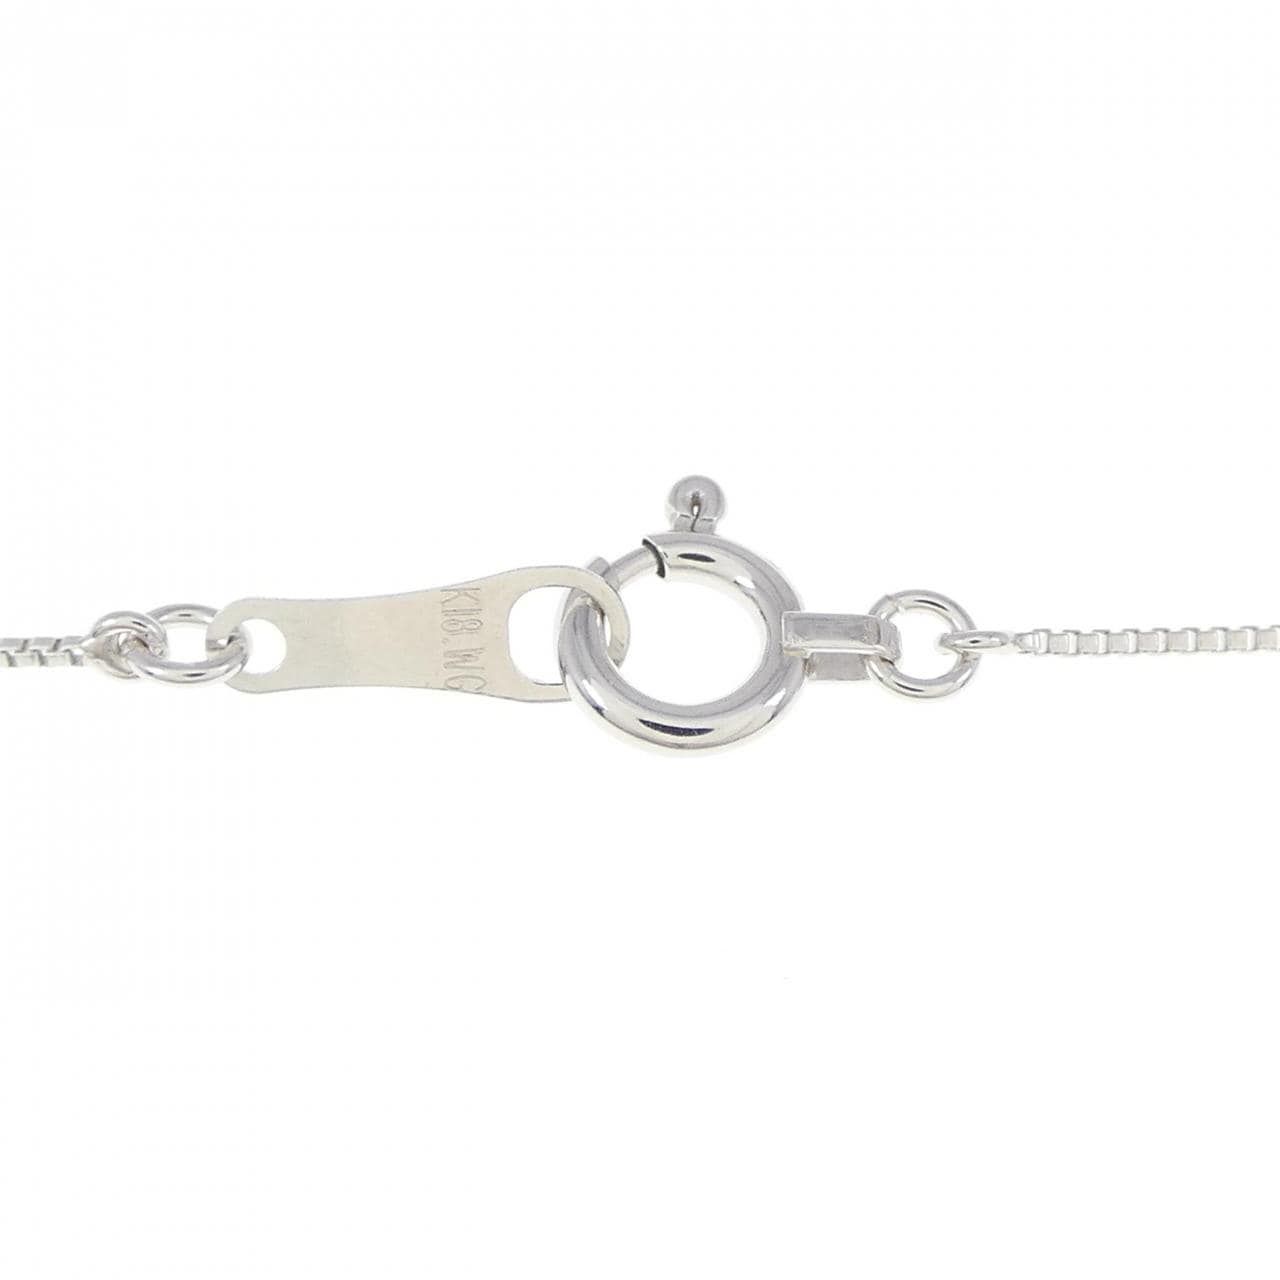 K18WG Venetian Chain Necklace